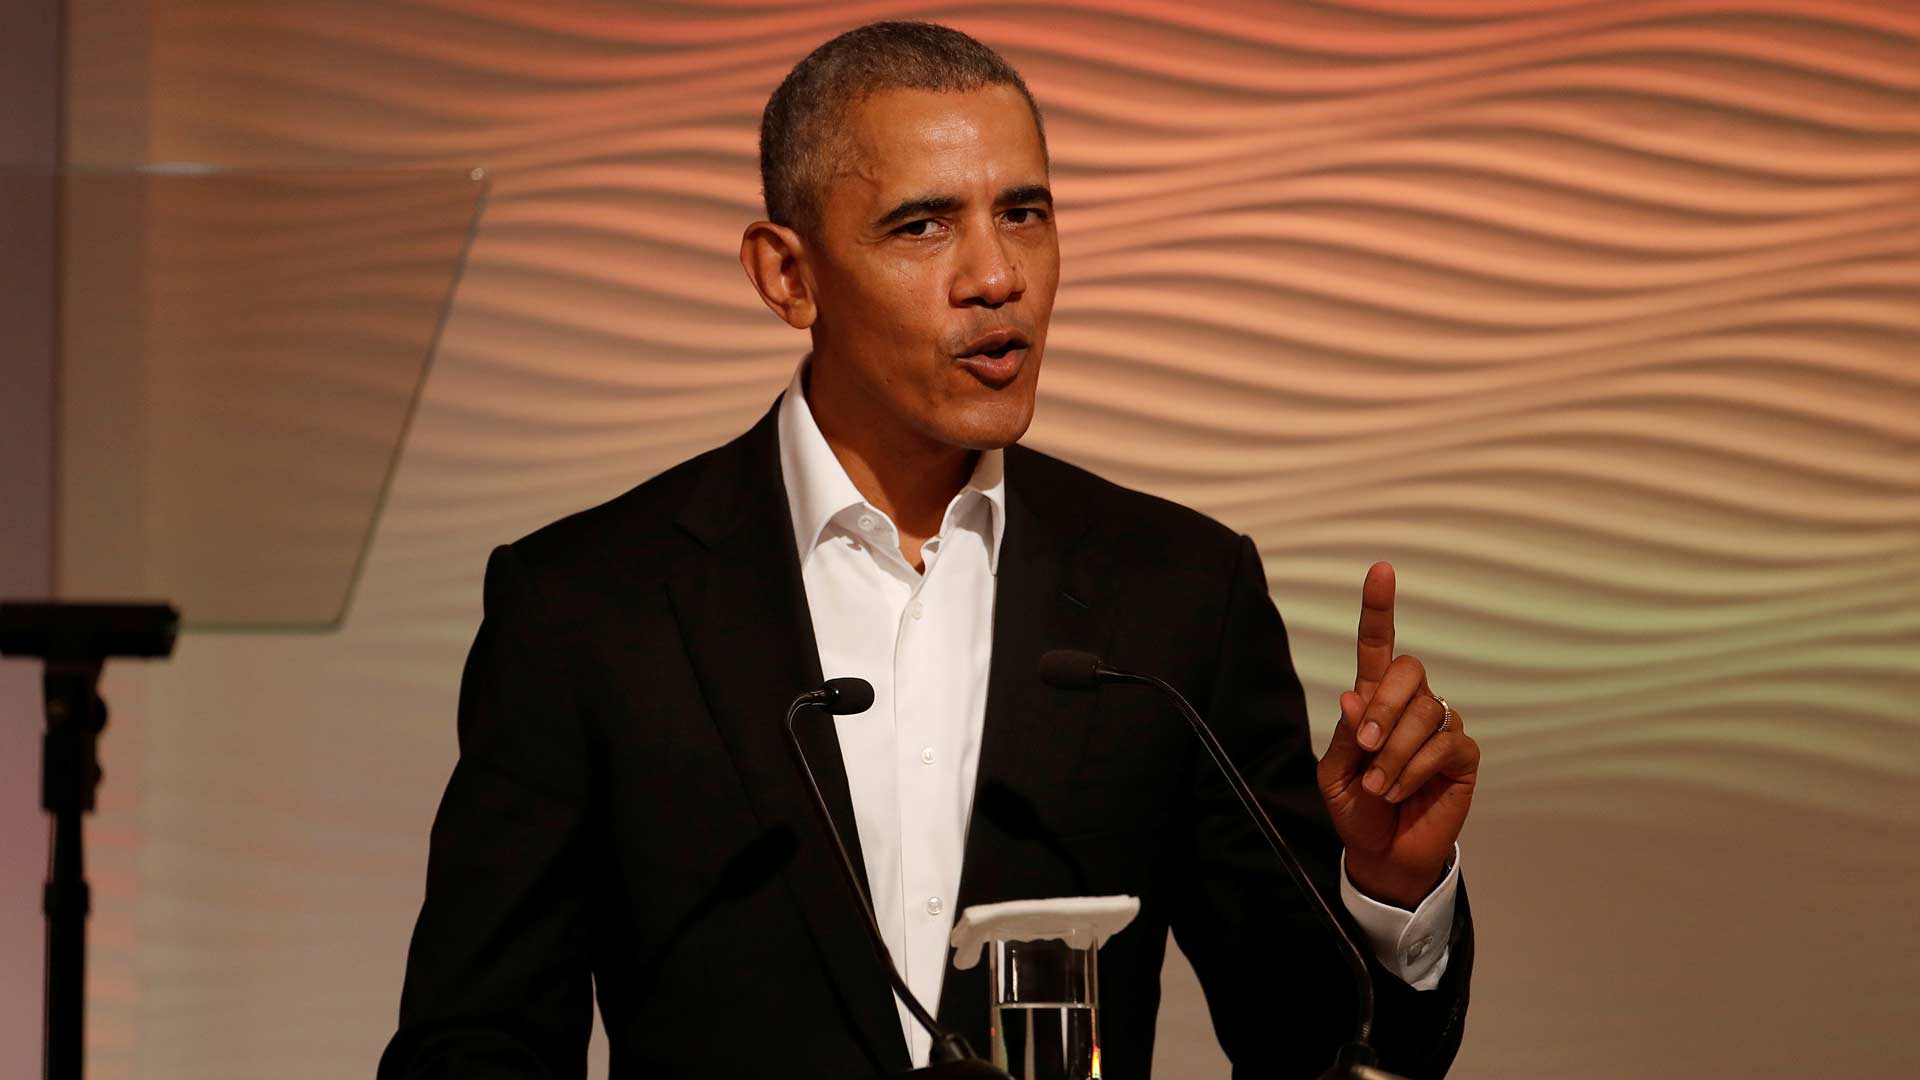 Obama aconseja a los políticos "pensar antes de tuitear"